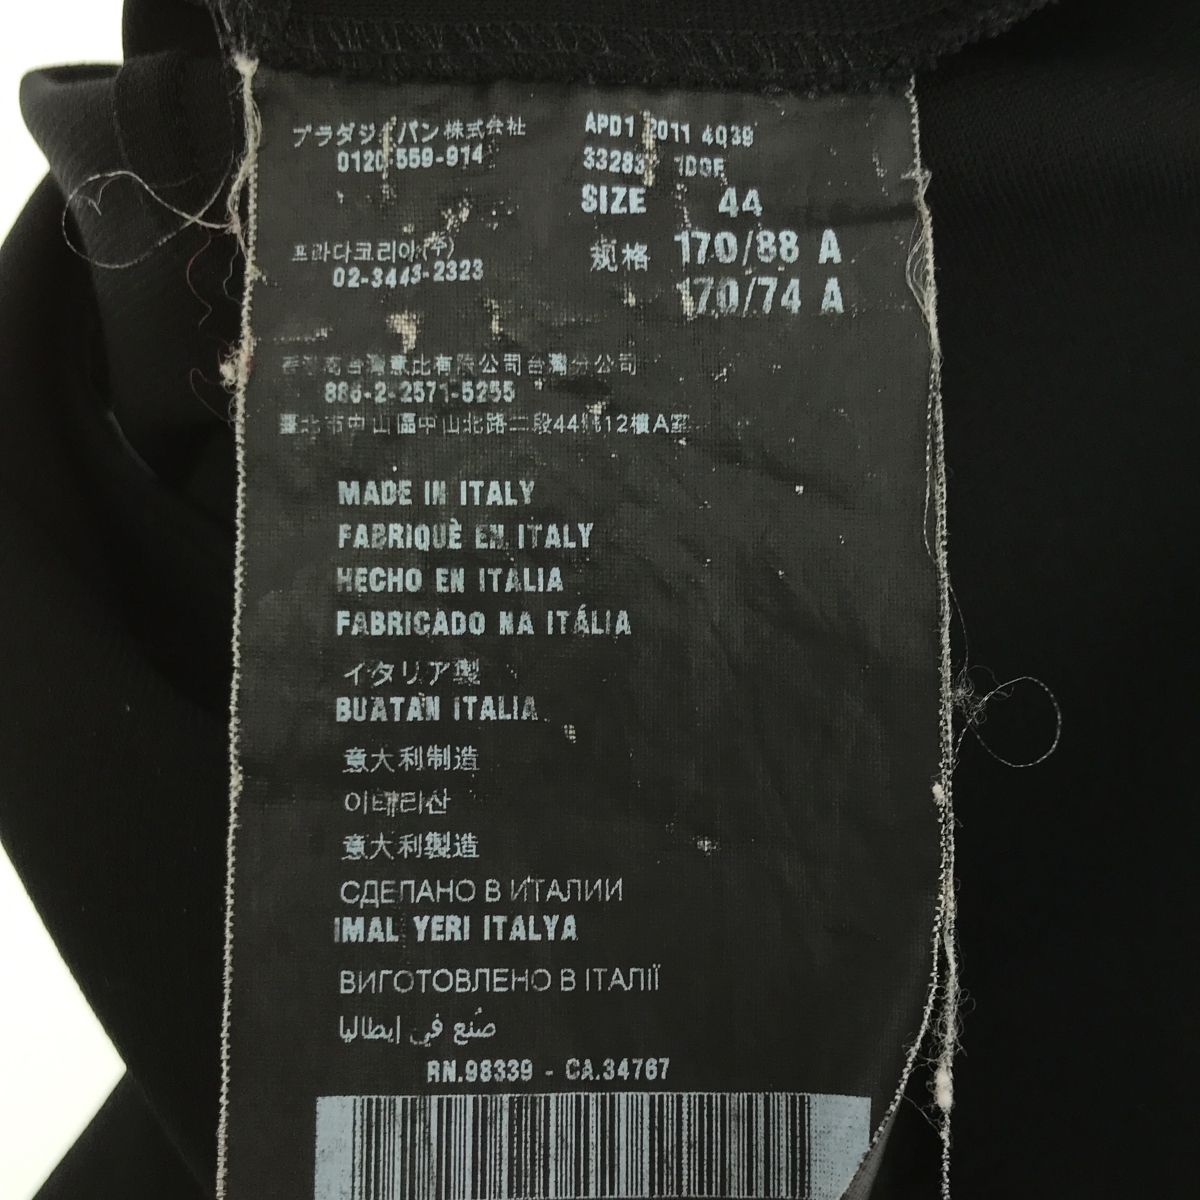 プラダ PRADA ワンピース 44 サイズ 黒 APD1 レーヨン ナイロン 衣類 ブラック ブランド 服 スカート 半袖 H6614 - メルカリ